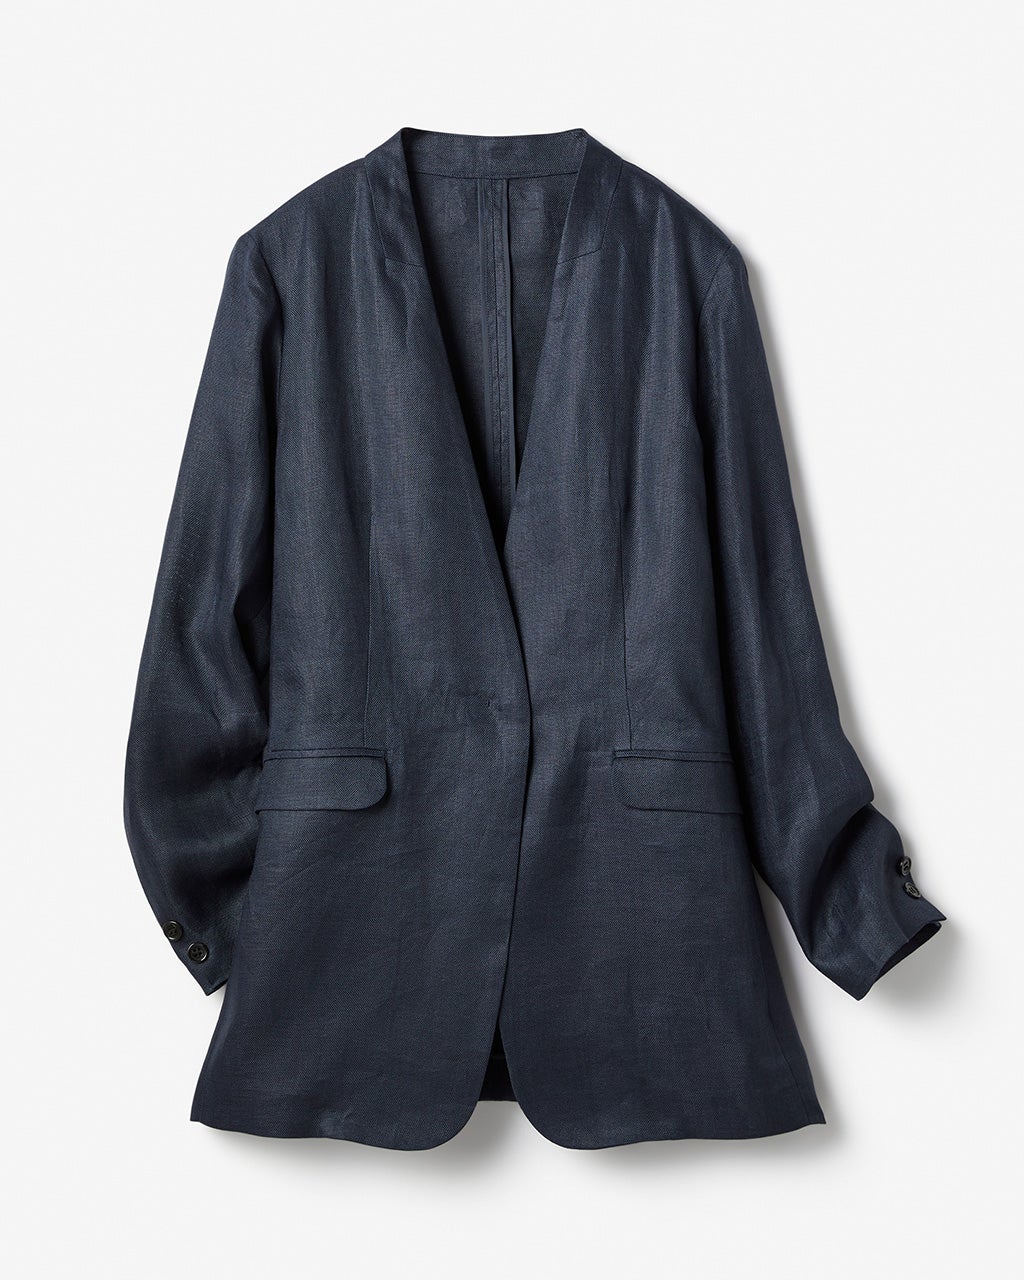 【販売商品】FLIPTS & DOBBELS 麻 ノーカラー羽織りジャケット ノーカラージャケット